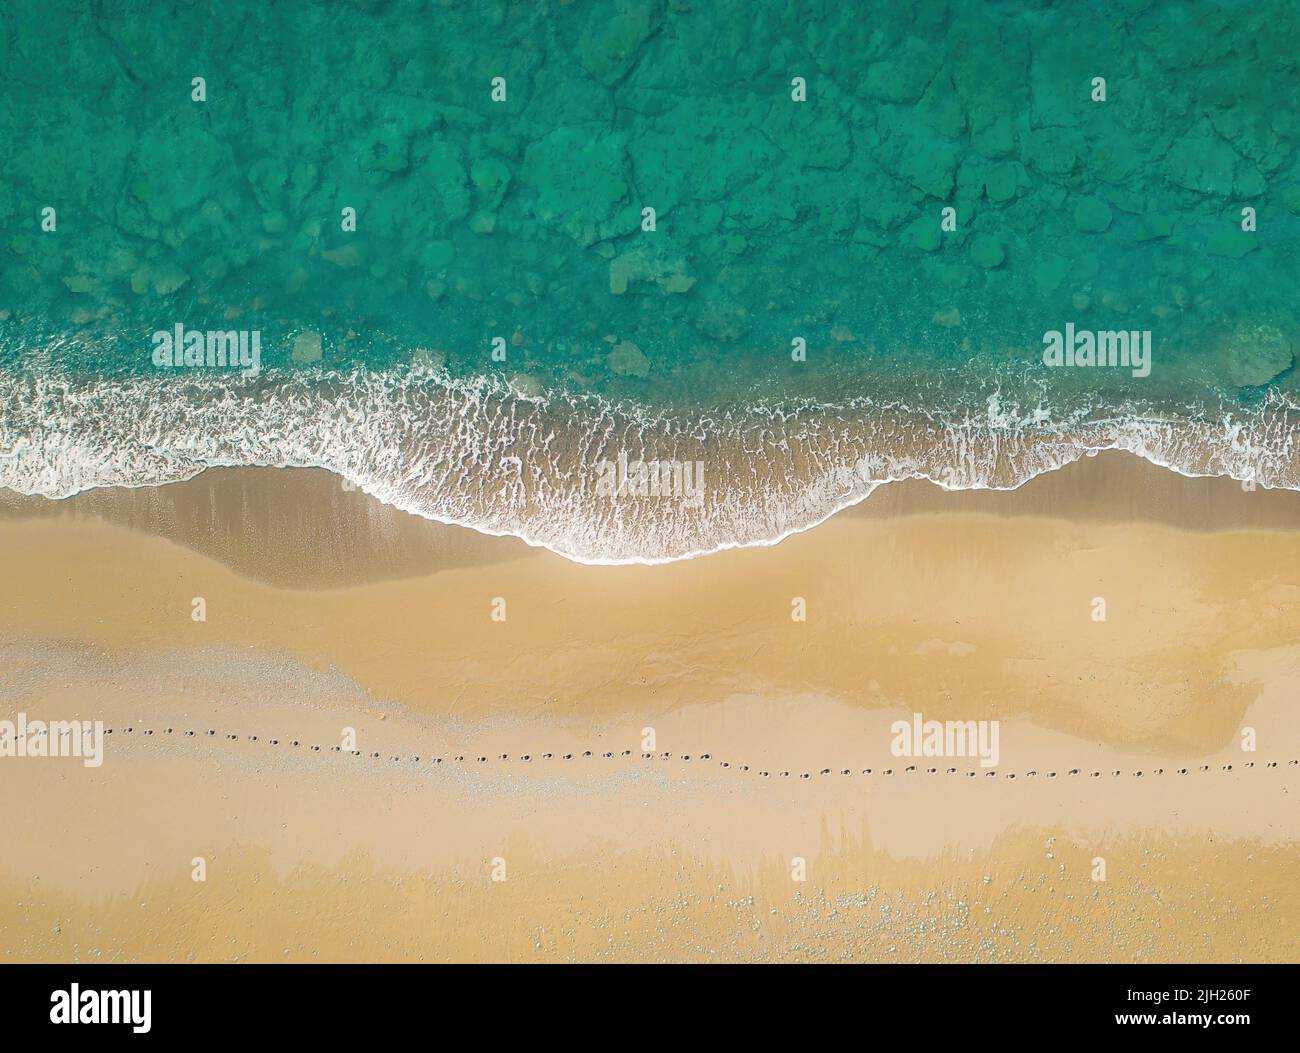 Huellas humanas en una orilla arenosa a lo largo del mar con olas rompientes. Vista aérea directamente encima Foto de stock